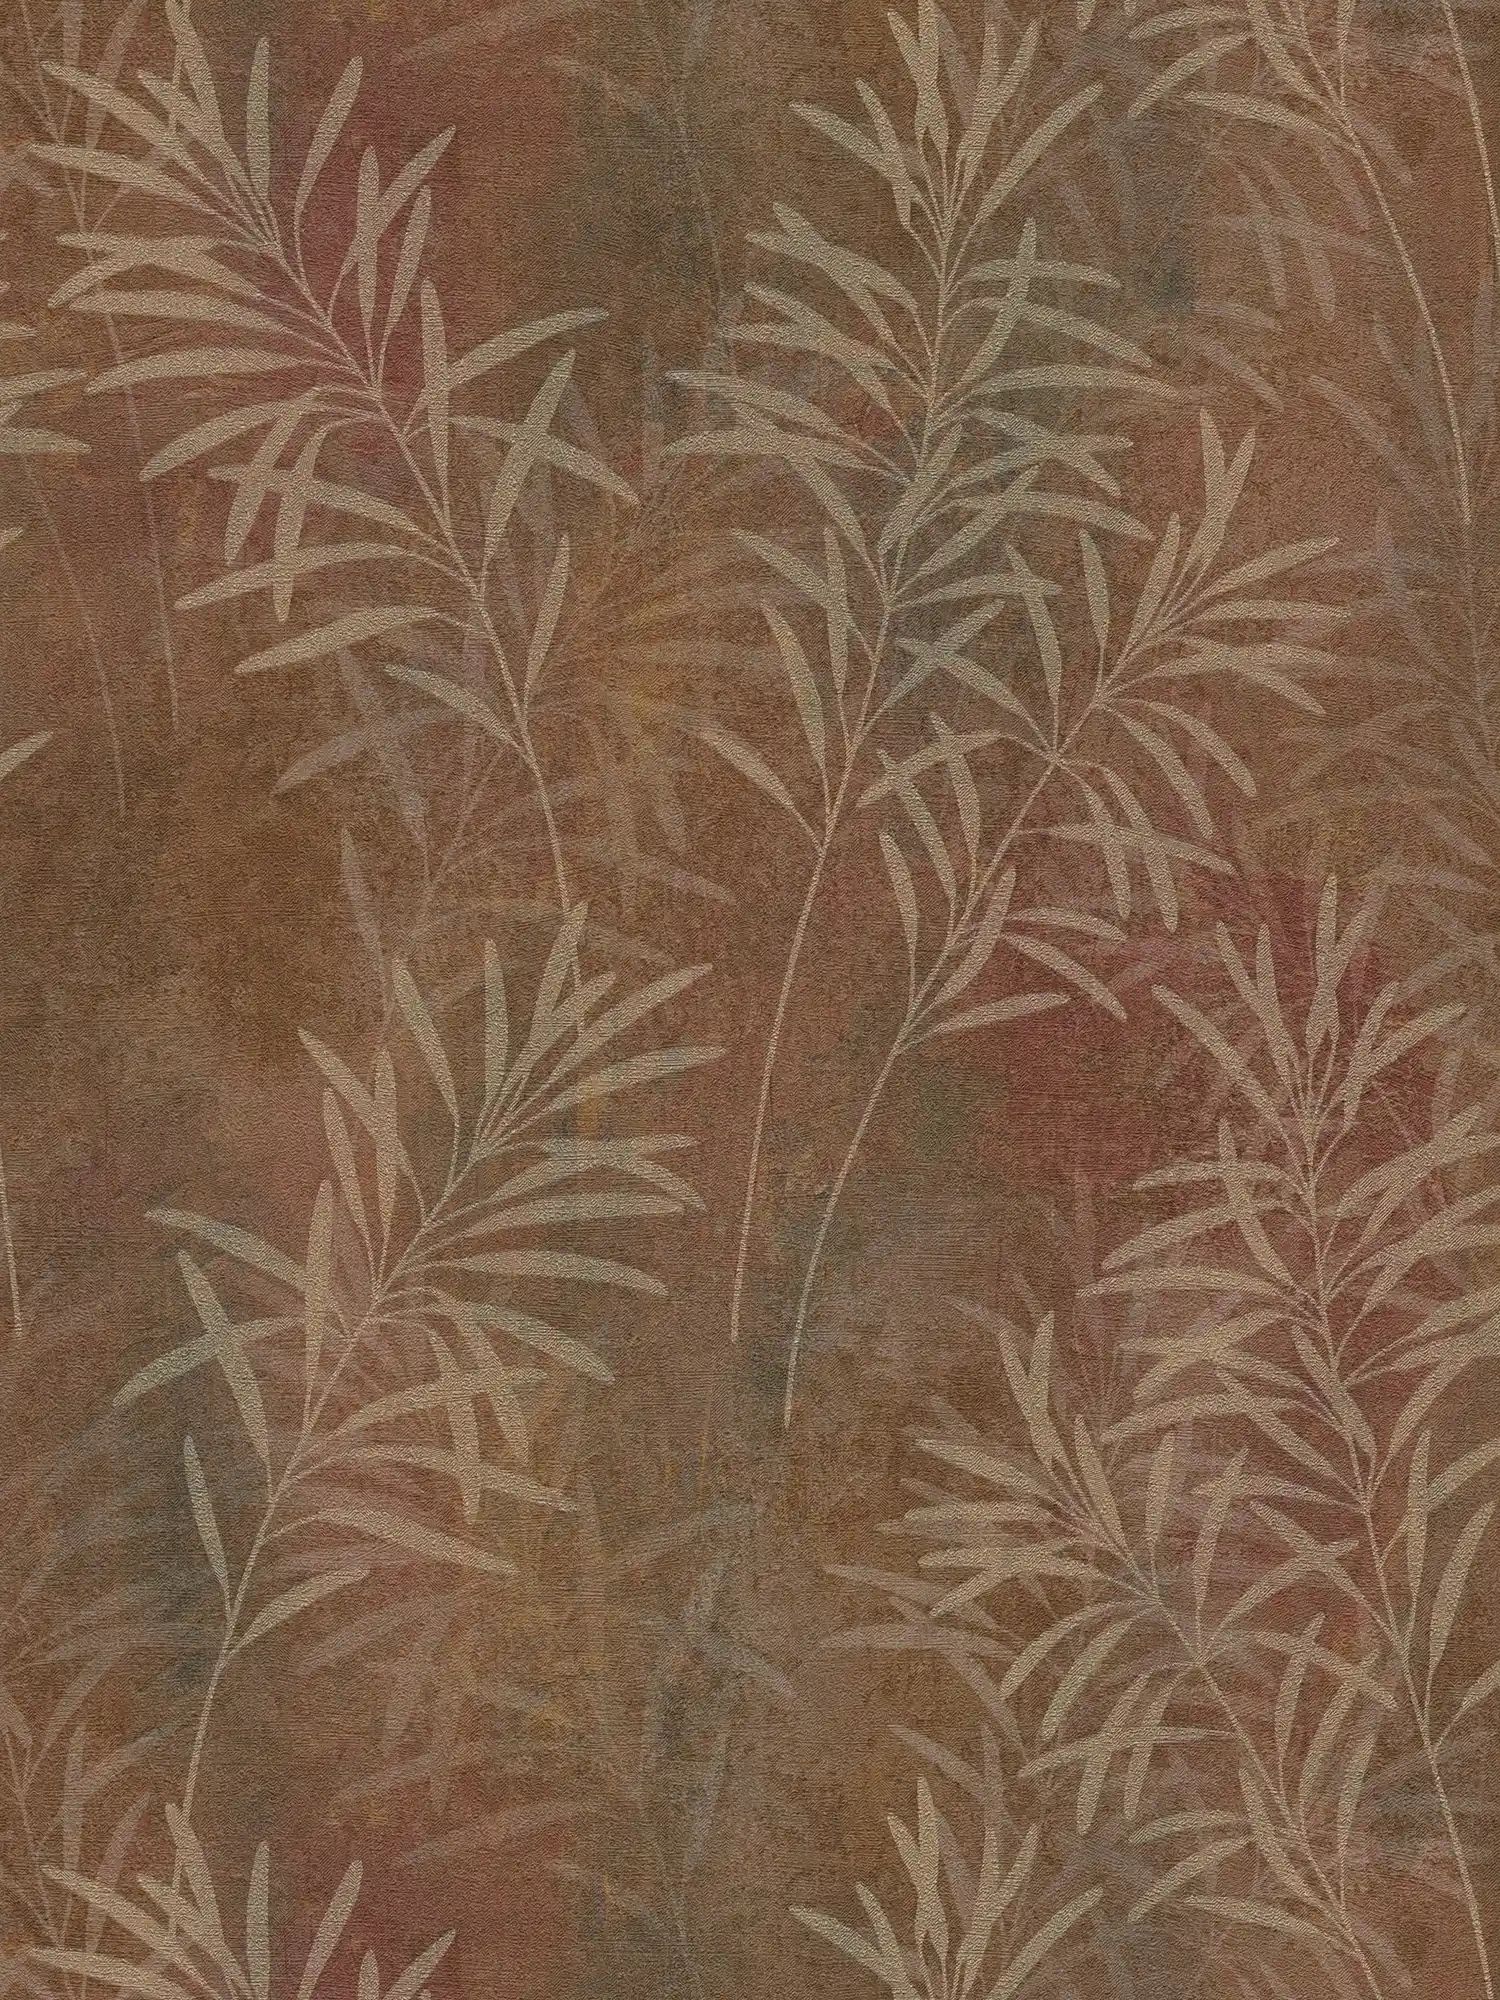         Papier peint intissé floral avec motif d'herbes et texture fine - marron, beige, métallique
    